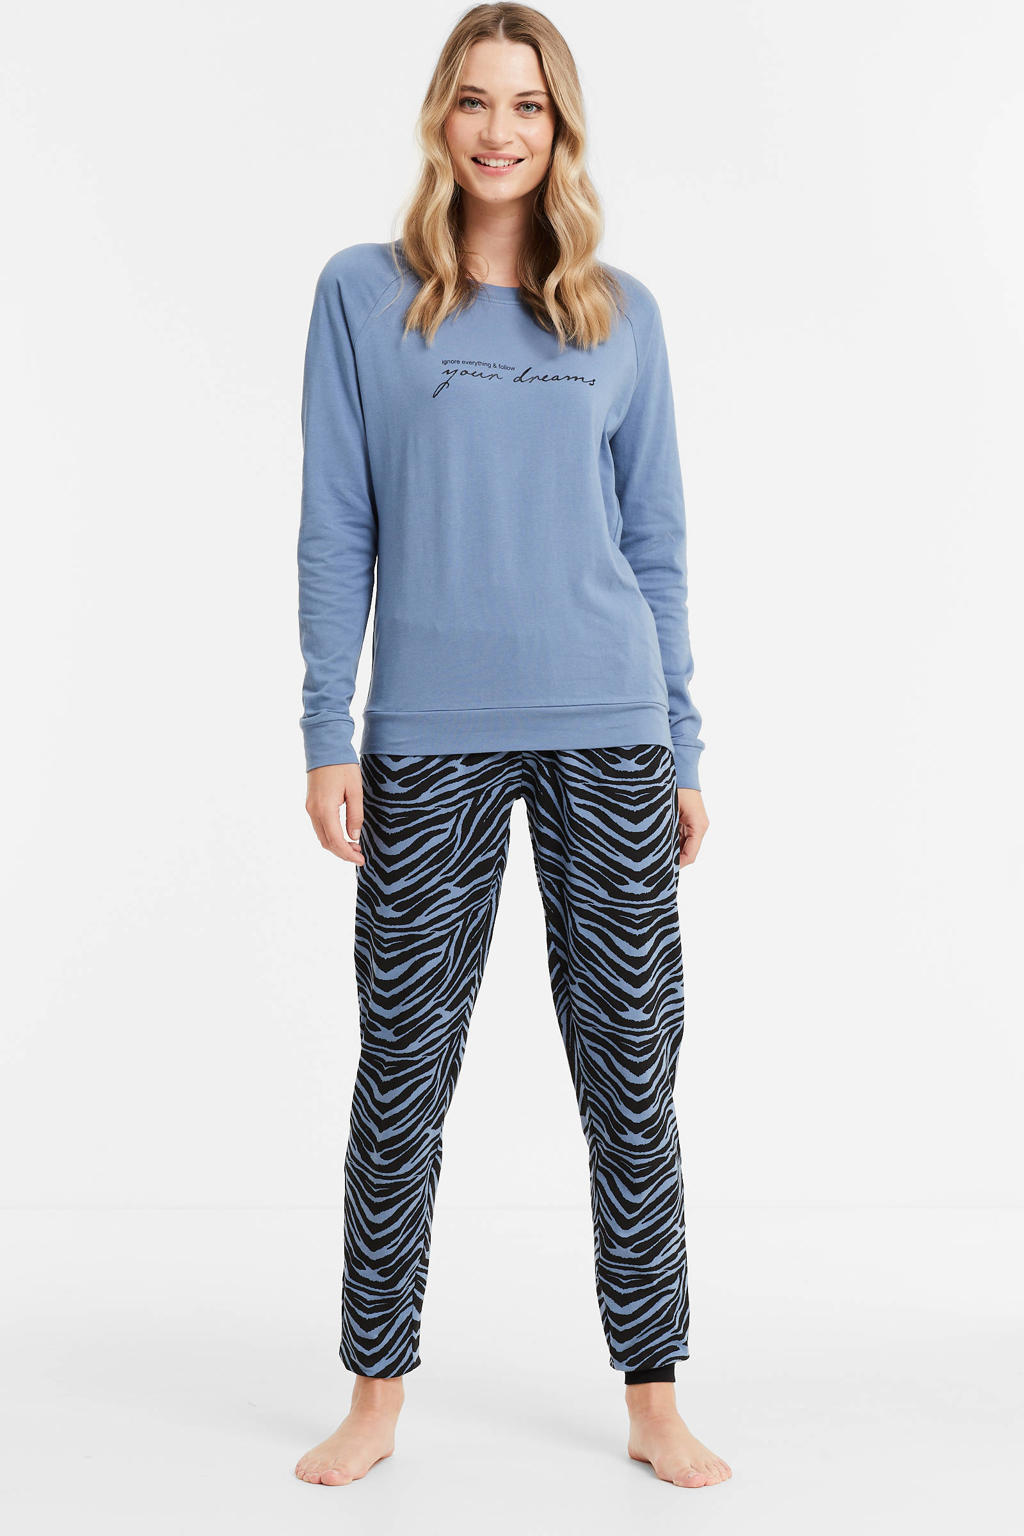 Dreamcovers pyjama met zebraprint blauw/zwart